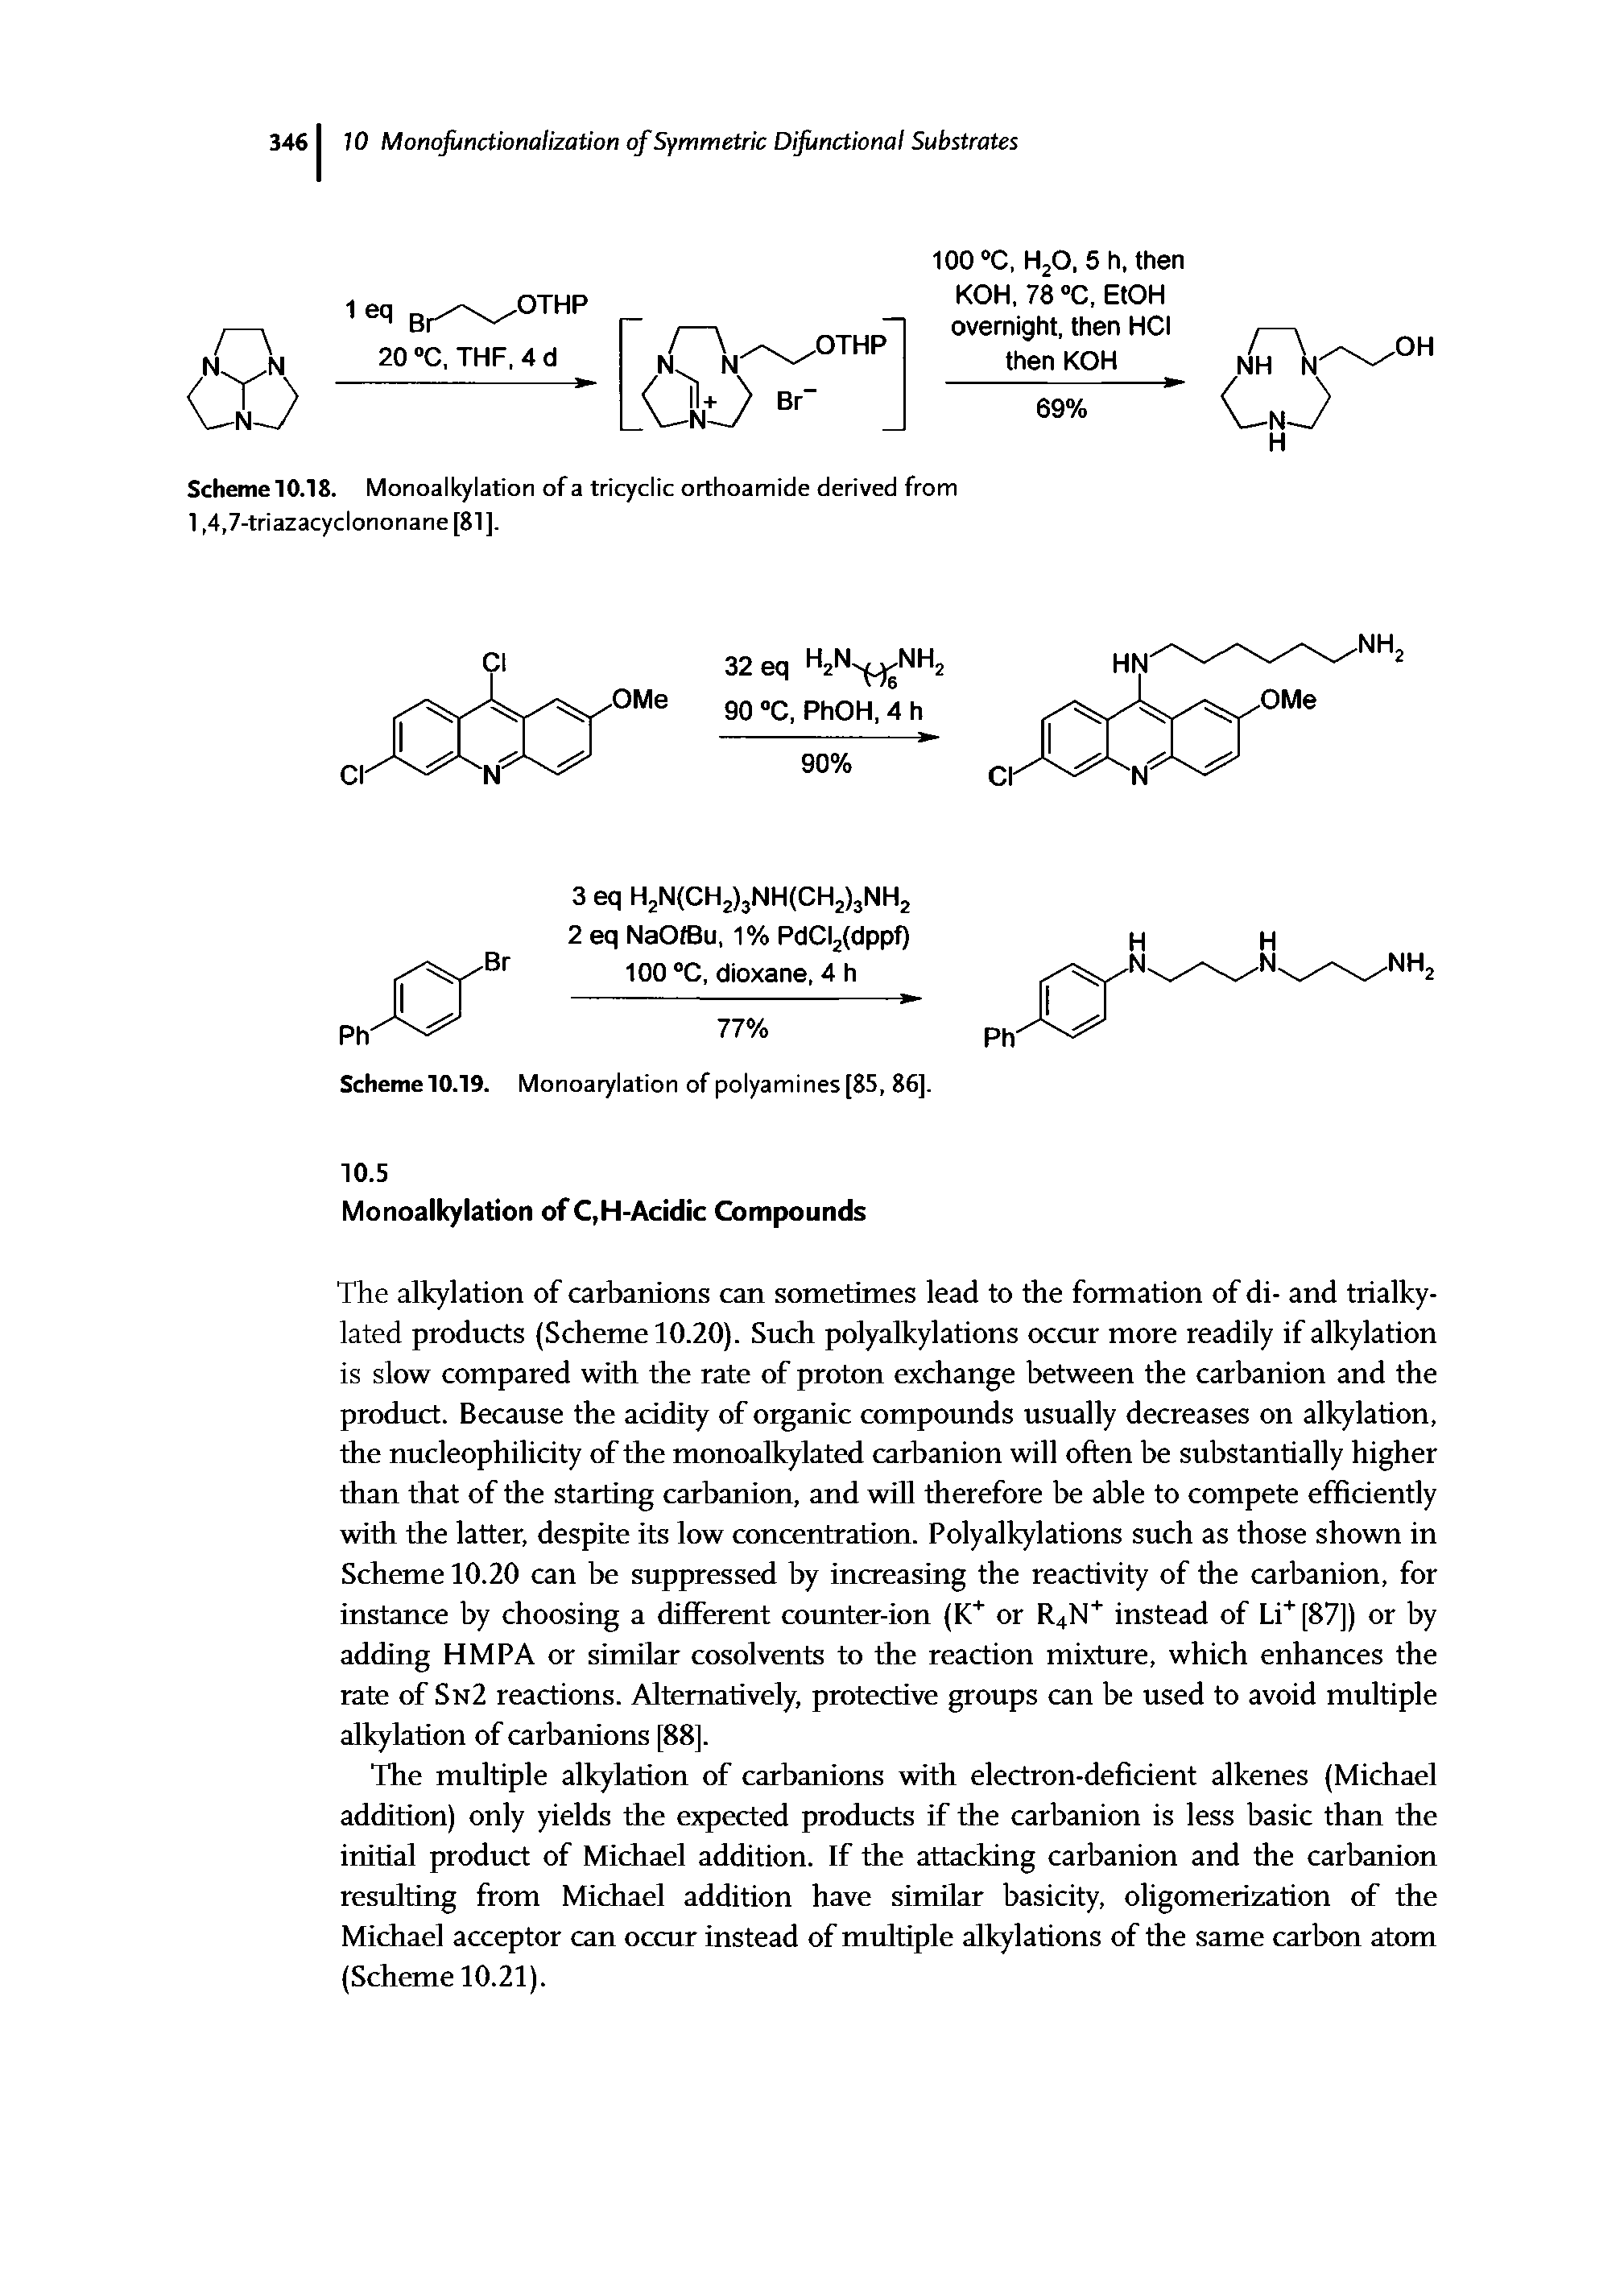 Scheme 10.18. Monoalkylation of a tricyclic orthoamide derived from 1,4,7-triazacyclononane[81].